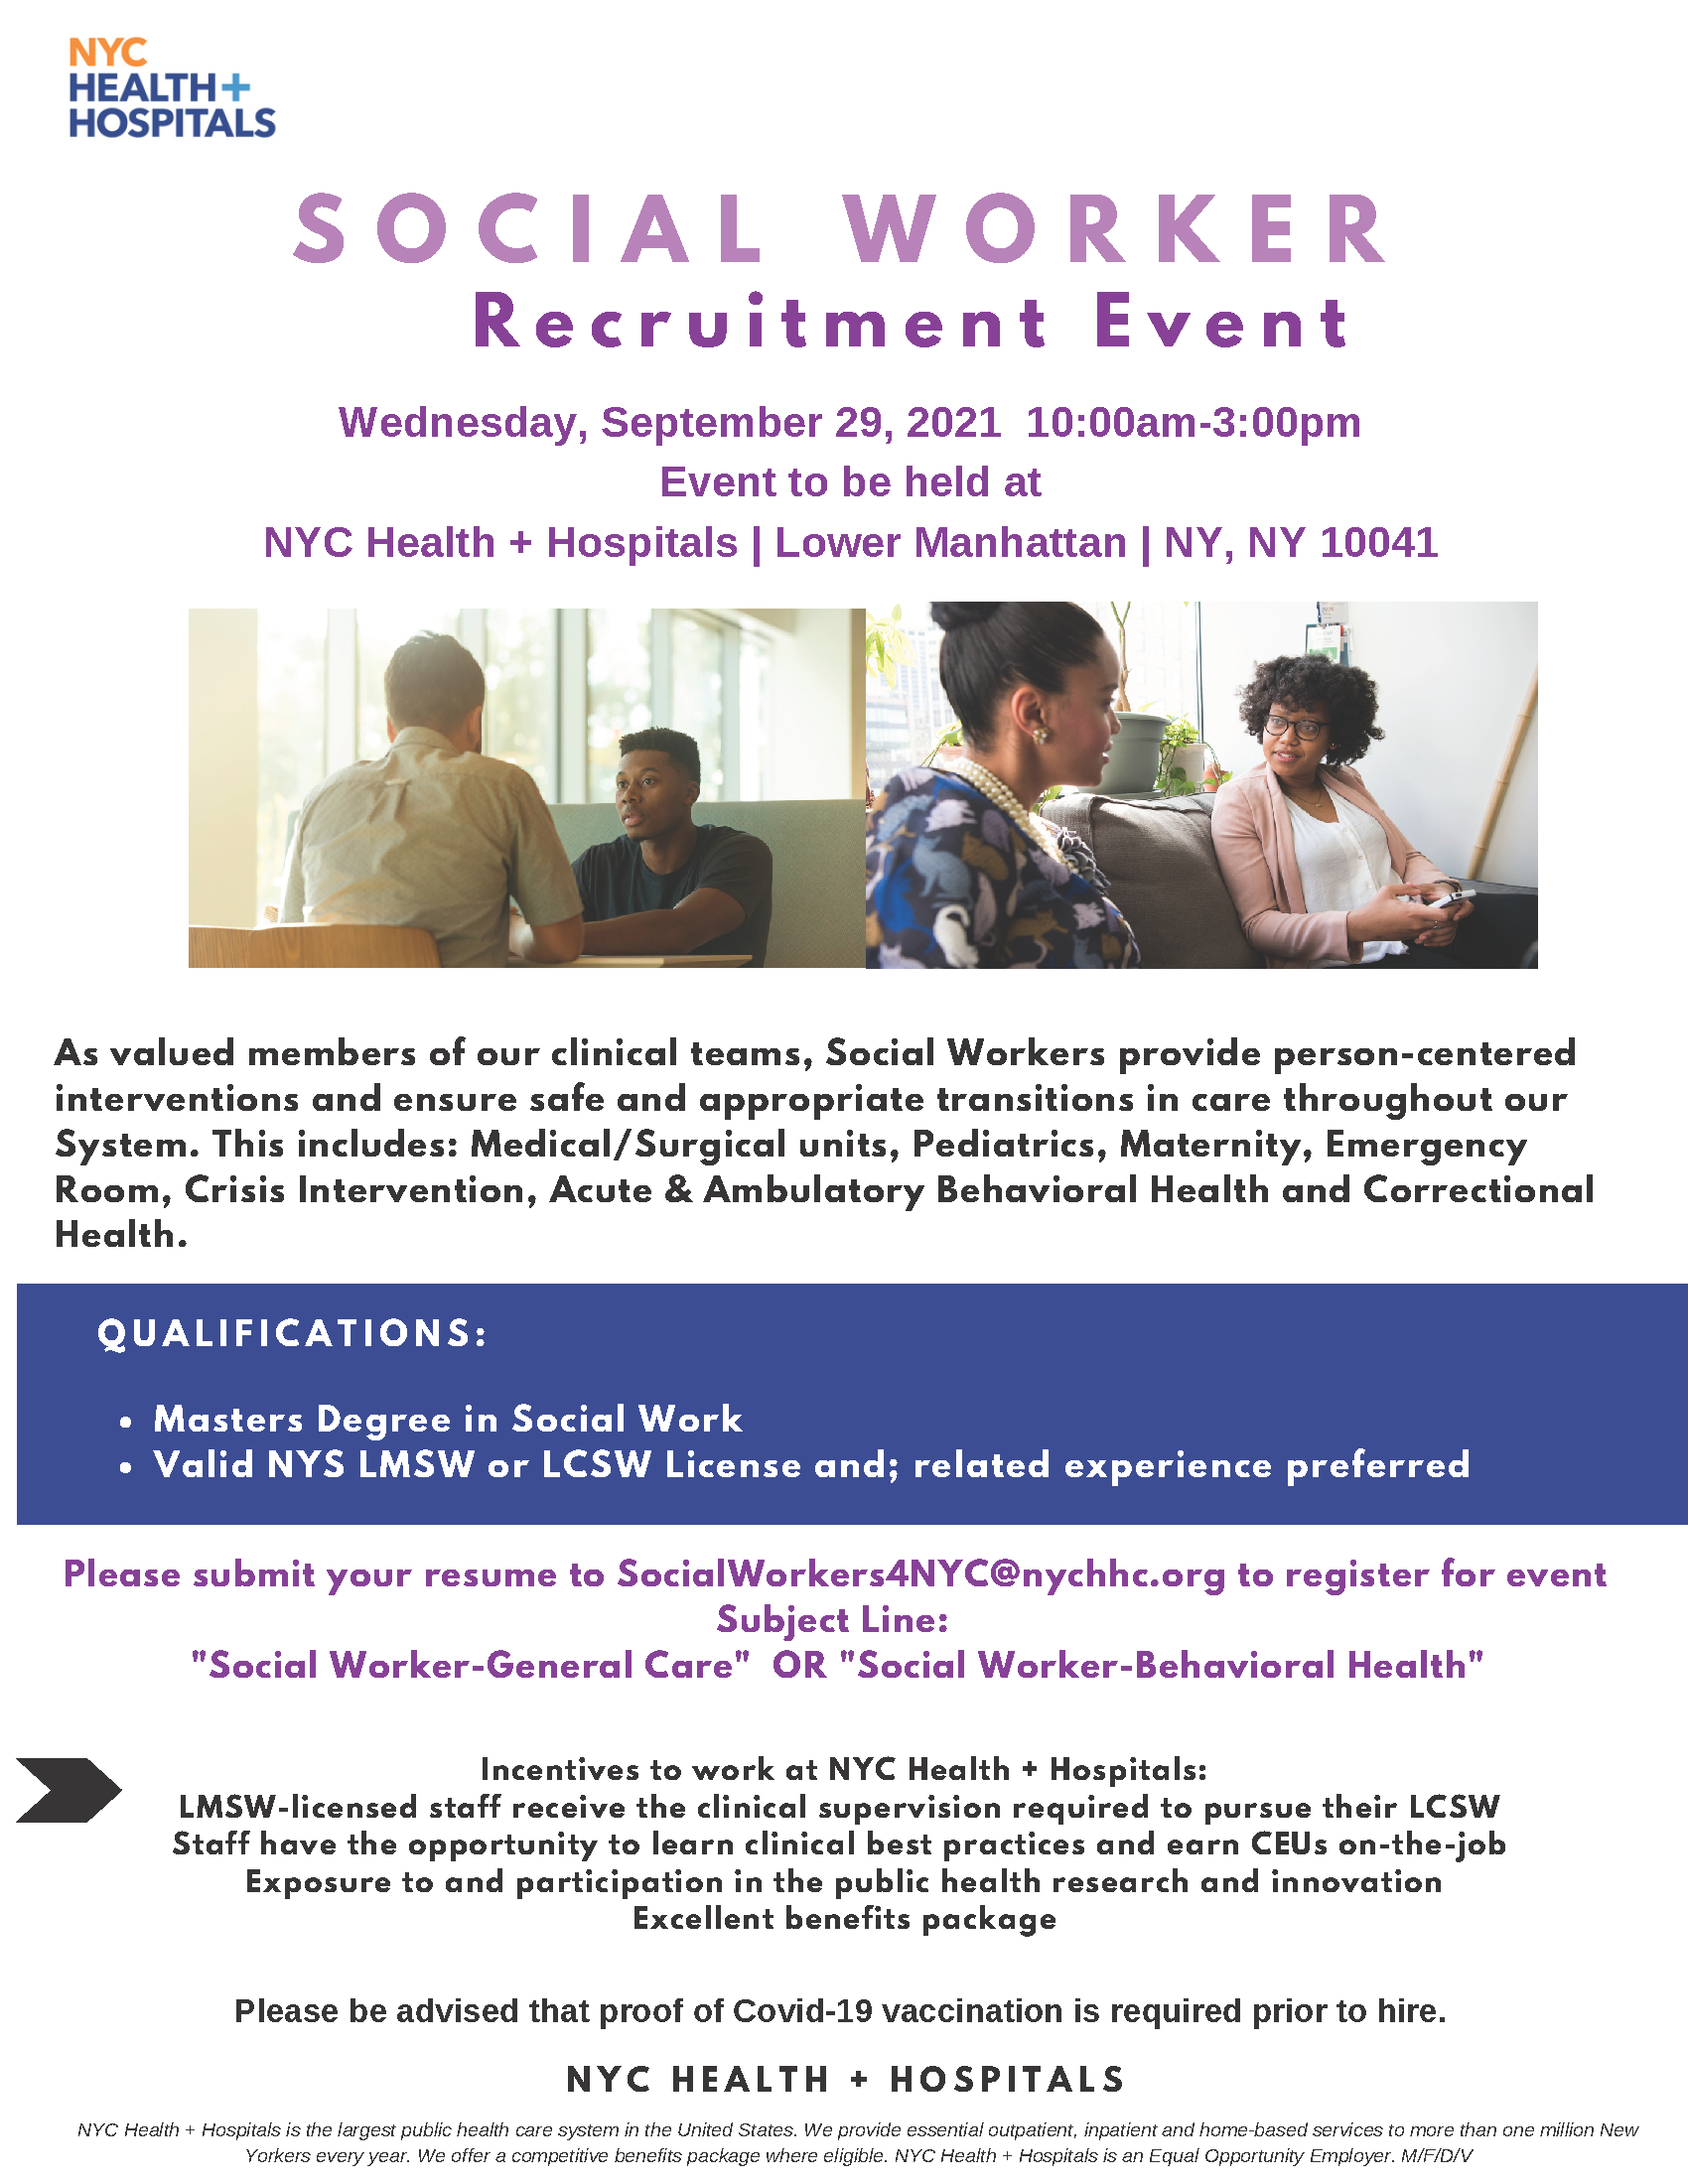 Flyer for Social Worker Recruitment Event on September 29